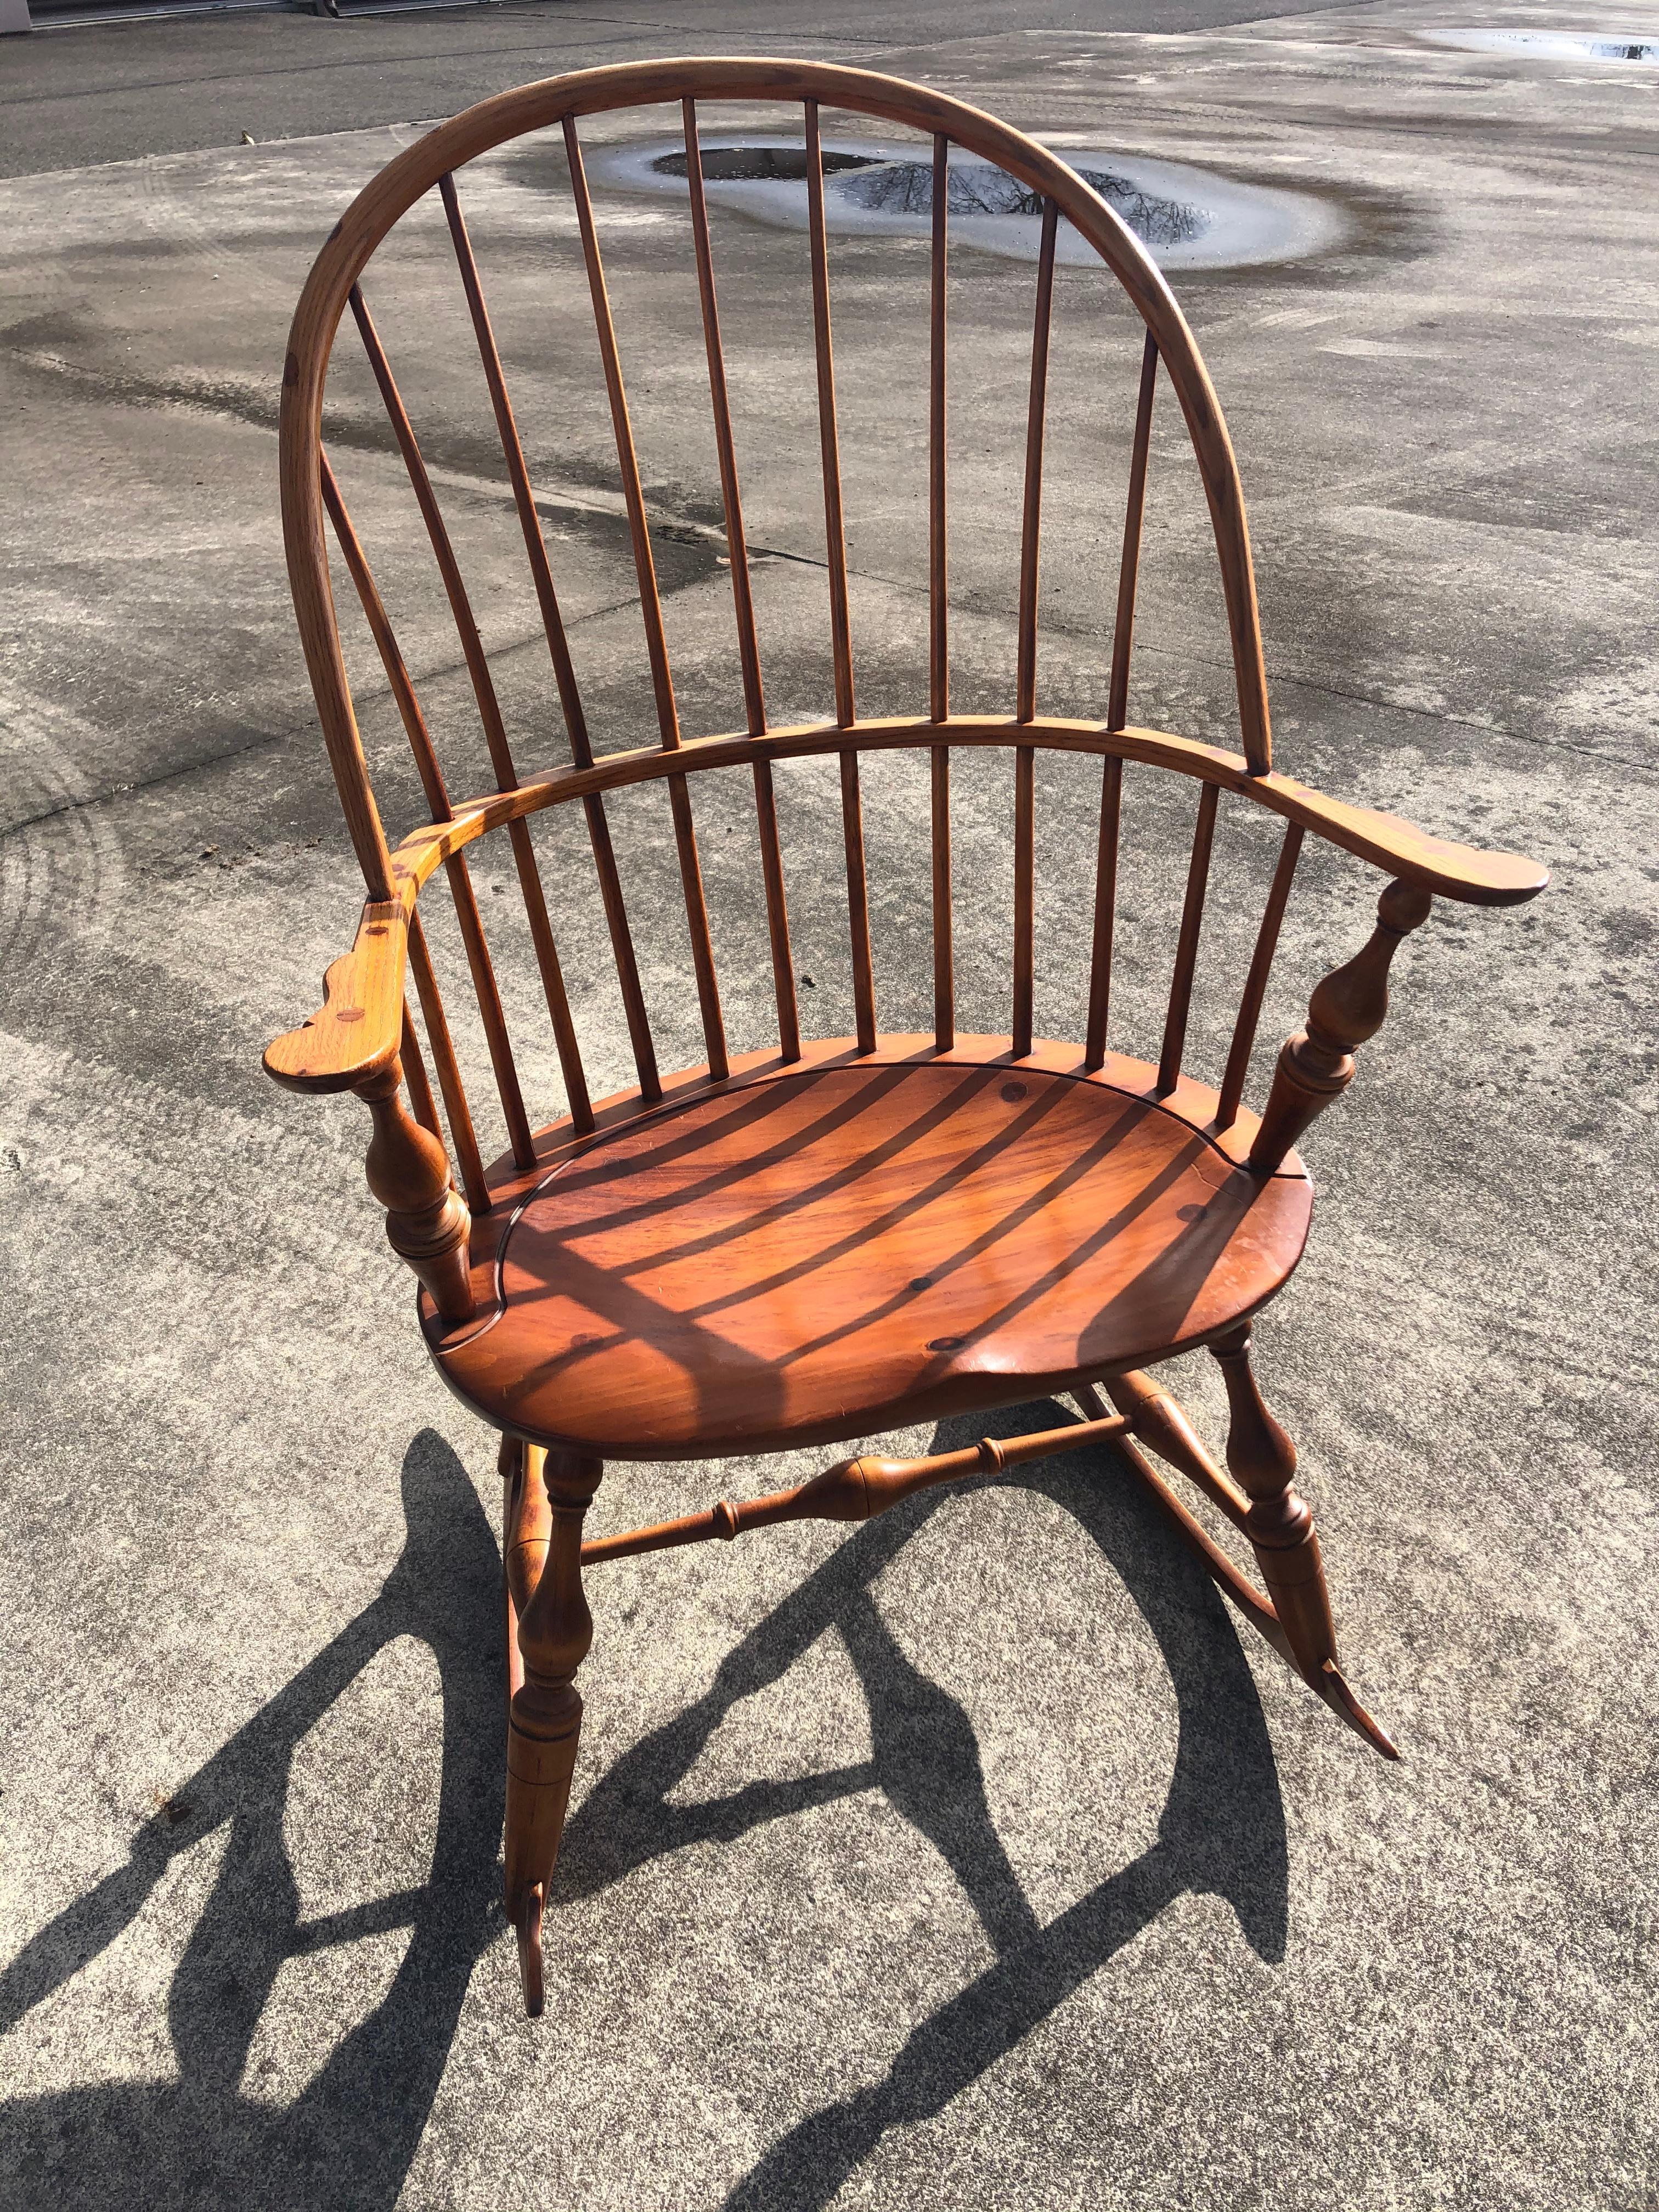 Wunderschön gearbeiteter Schaukelstuhl im Windsor-Stil aus Ahorn, mit modelliertem Sitz und feinen Spindeln auf einer gebogenen Rückenlehne. Die Beine sind ebenfalls aus schönem gedrechseltem Holz, und der ganze Schaukelstuhl ist elegant und